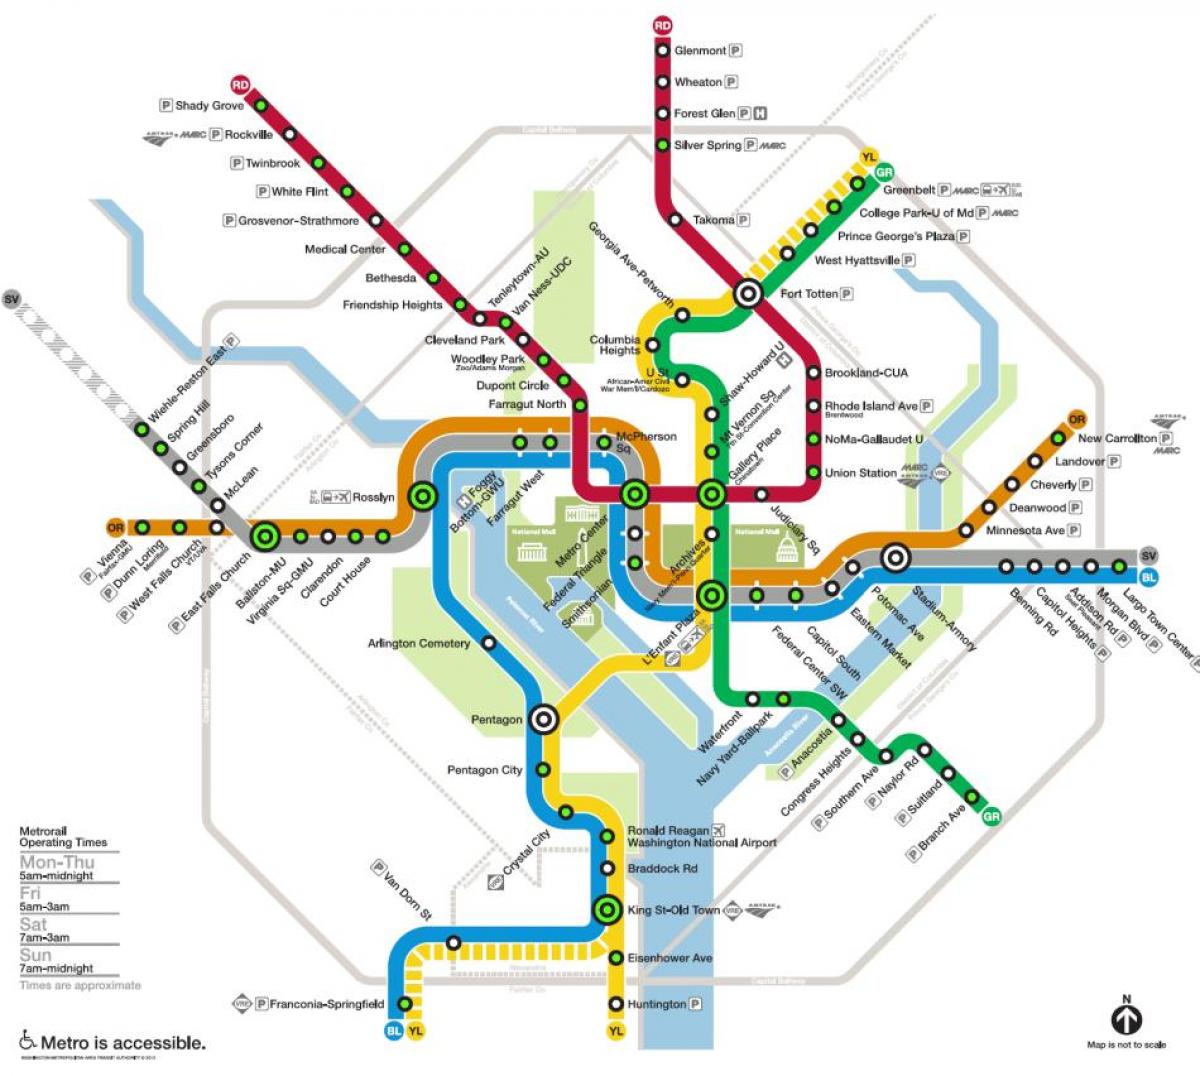 वाशिंगटन मेट्रो स्टेशन का नक्शा